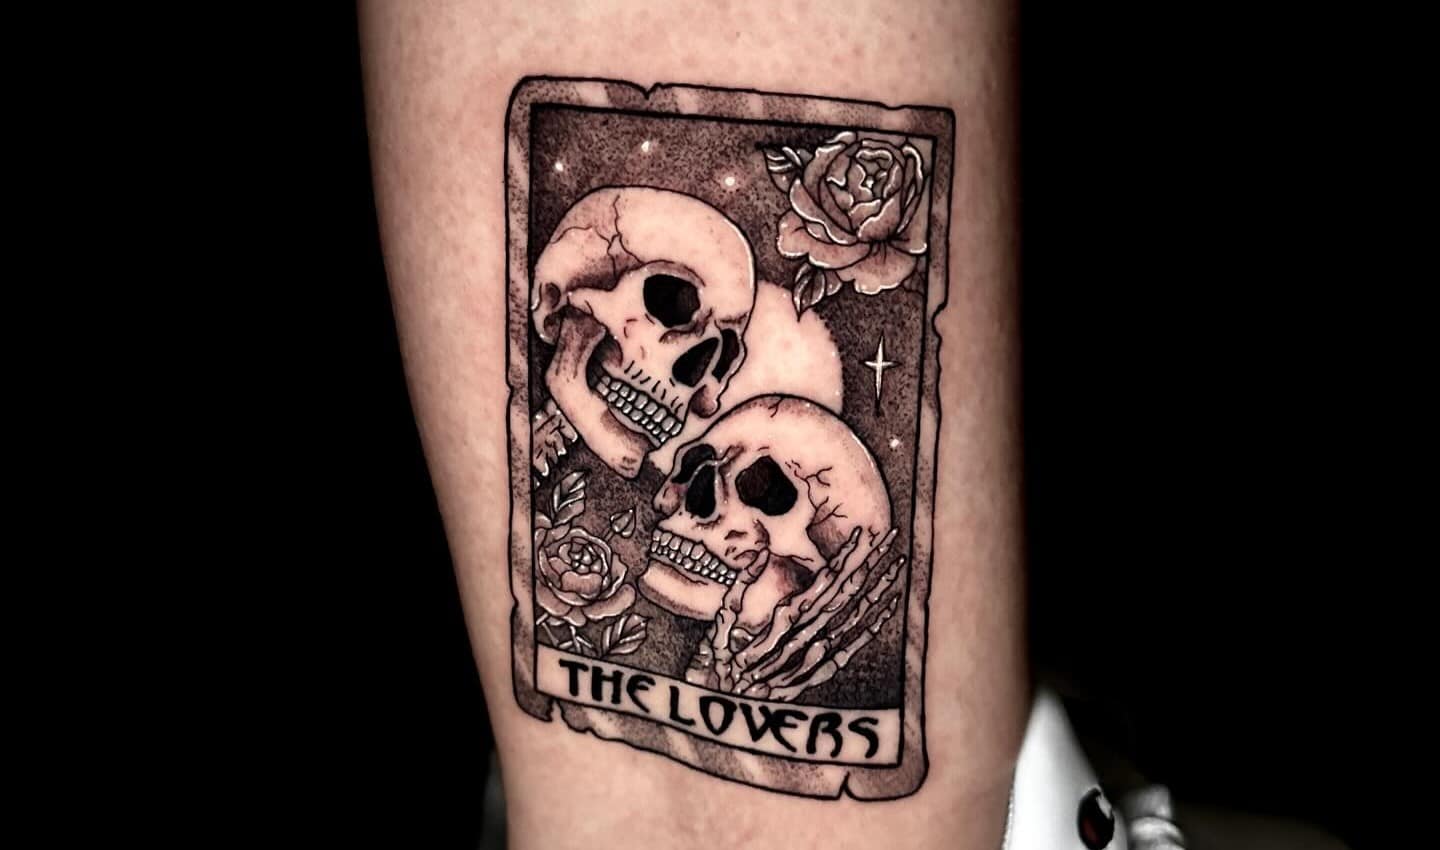 skeleton lovers tattoo on leg